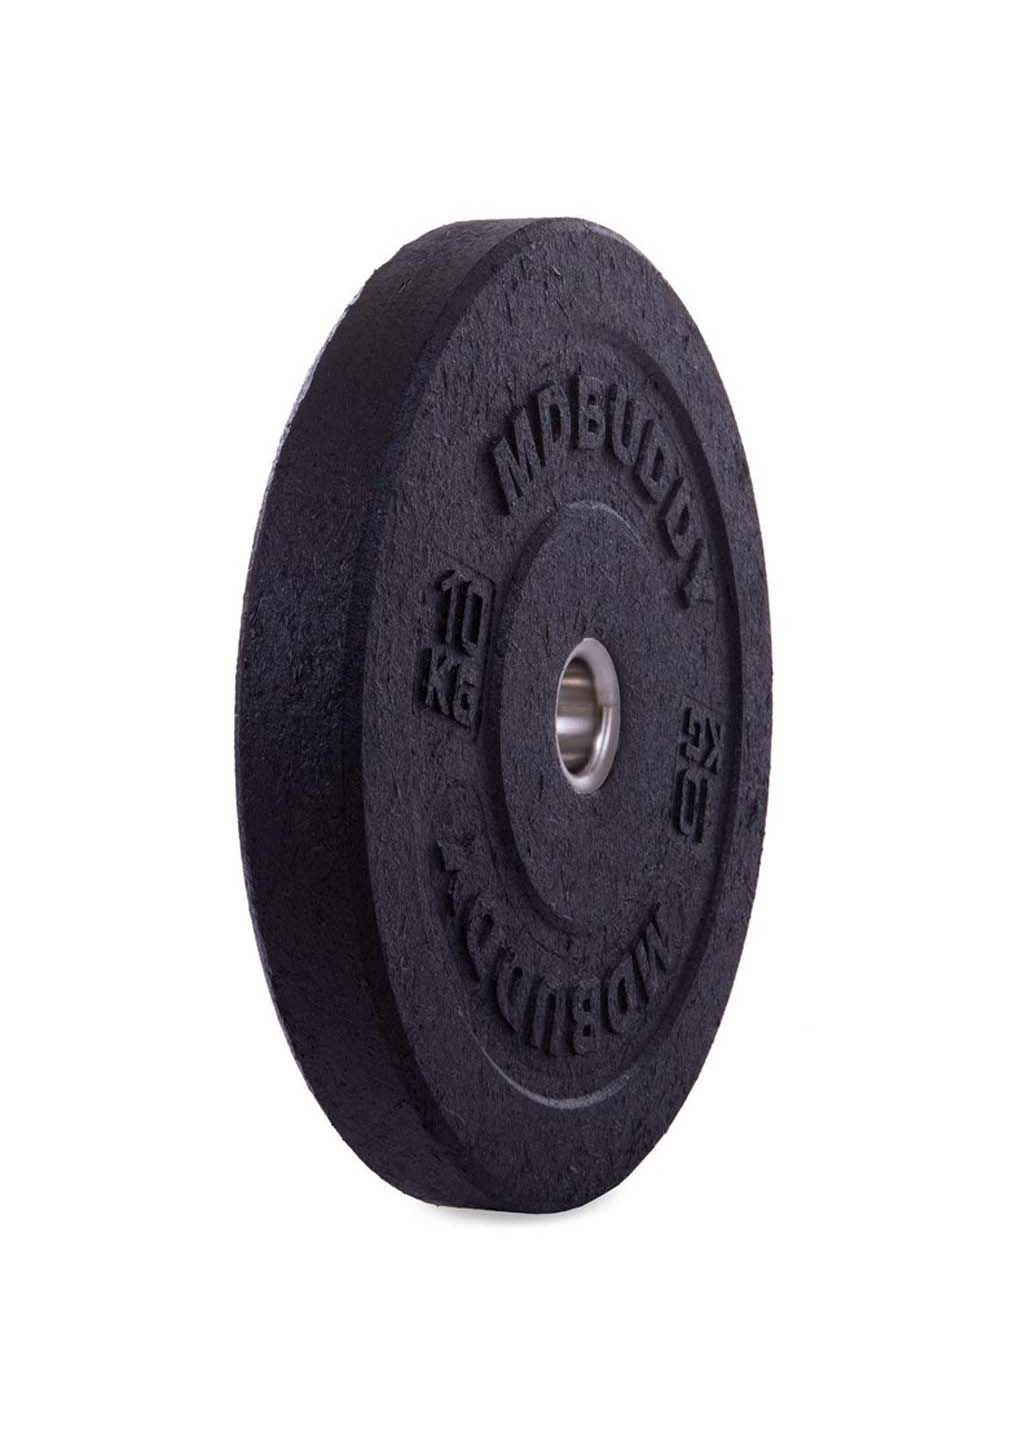 Блины диски бамперные для кроссфита Bumper Plates TA-2676 10 кг MDbuddy (286043760)